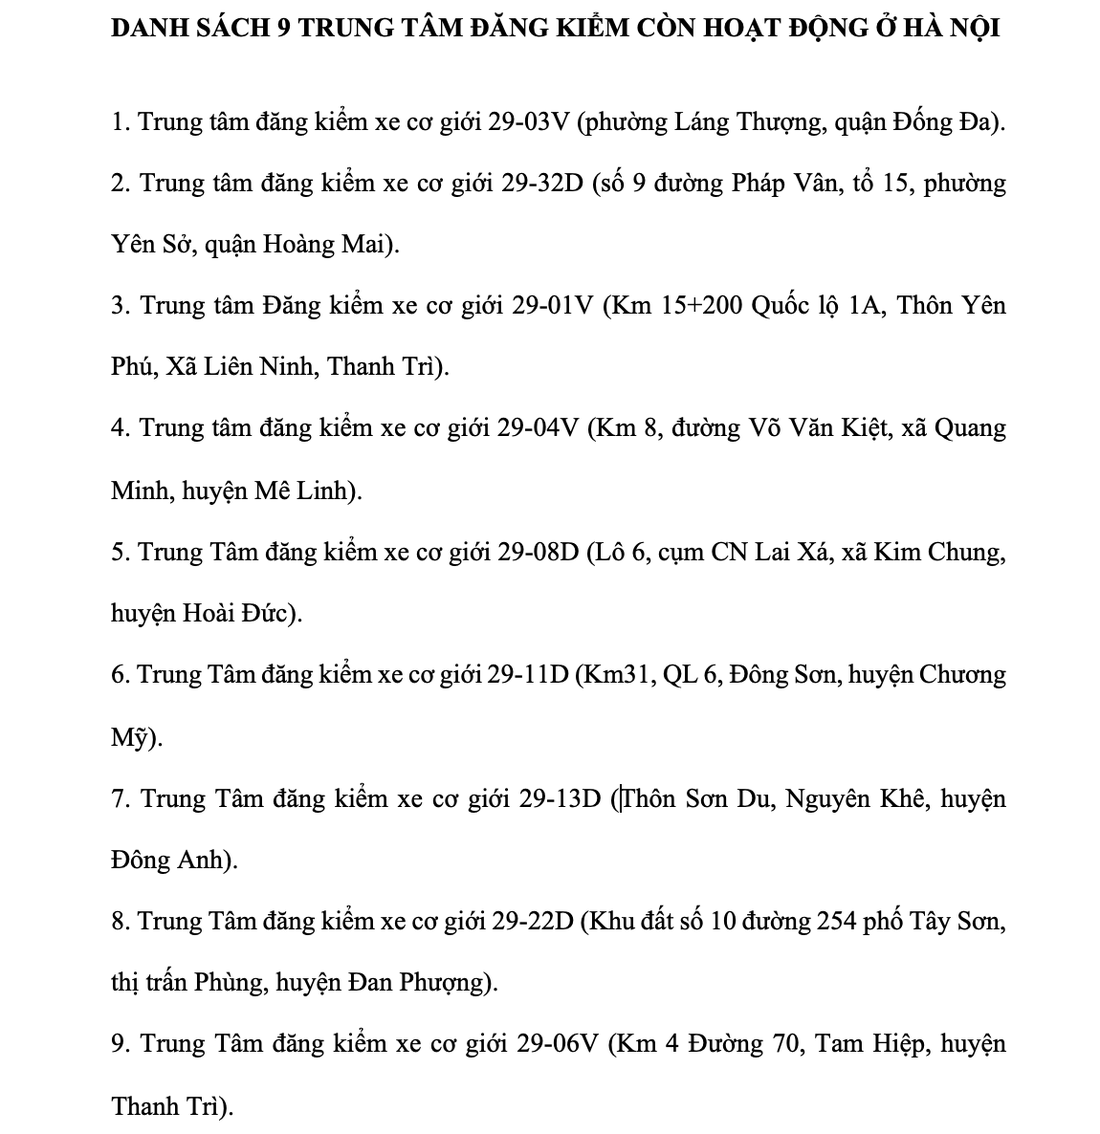 Tin tức sáng 6-3: Hà Nội chỉ còn 9 trung tâm đăng kiểm hoạt động - Ảnh 3.